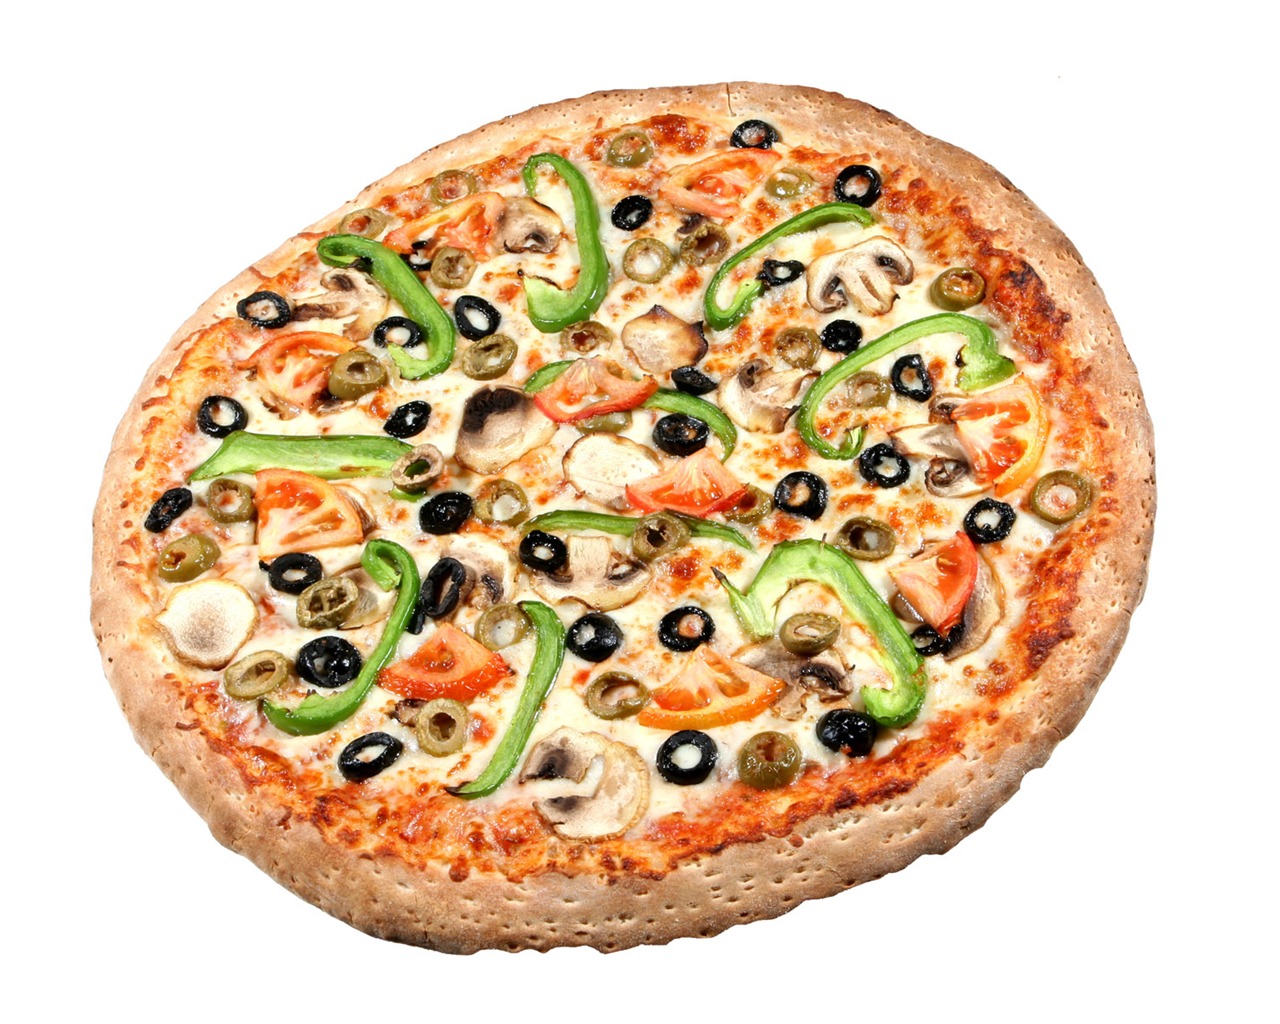 Fondos de pizzerías de Alimentos (4) #8 - 1280x1024